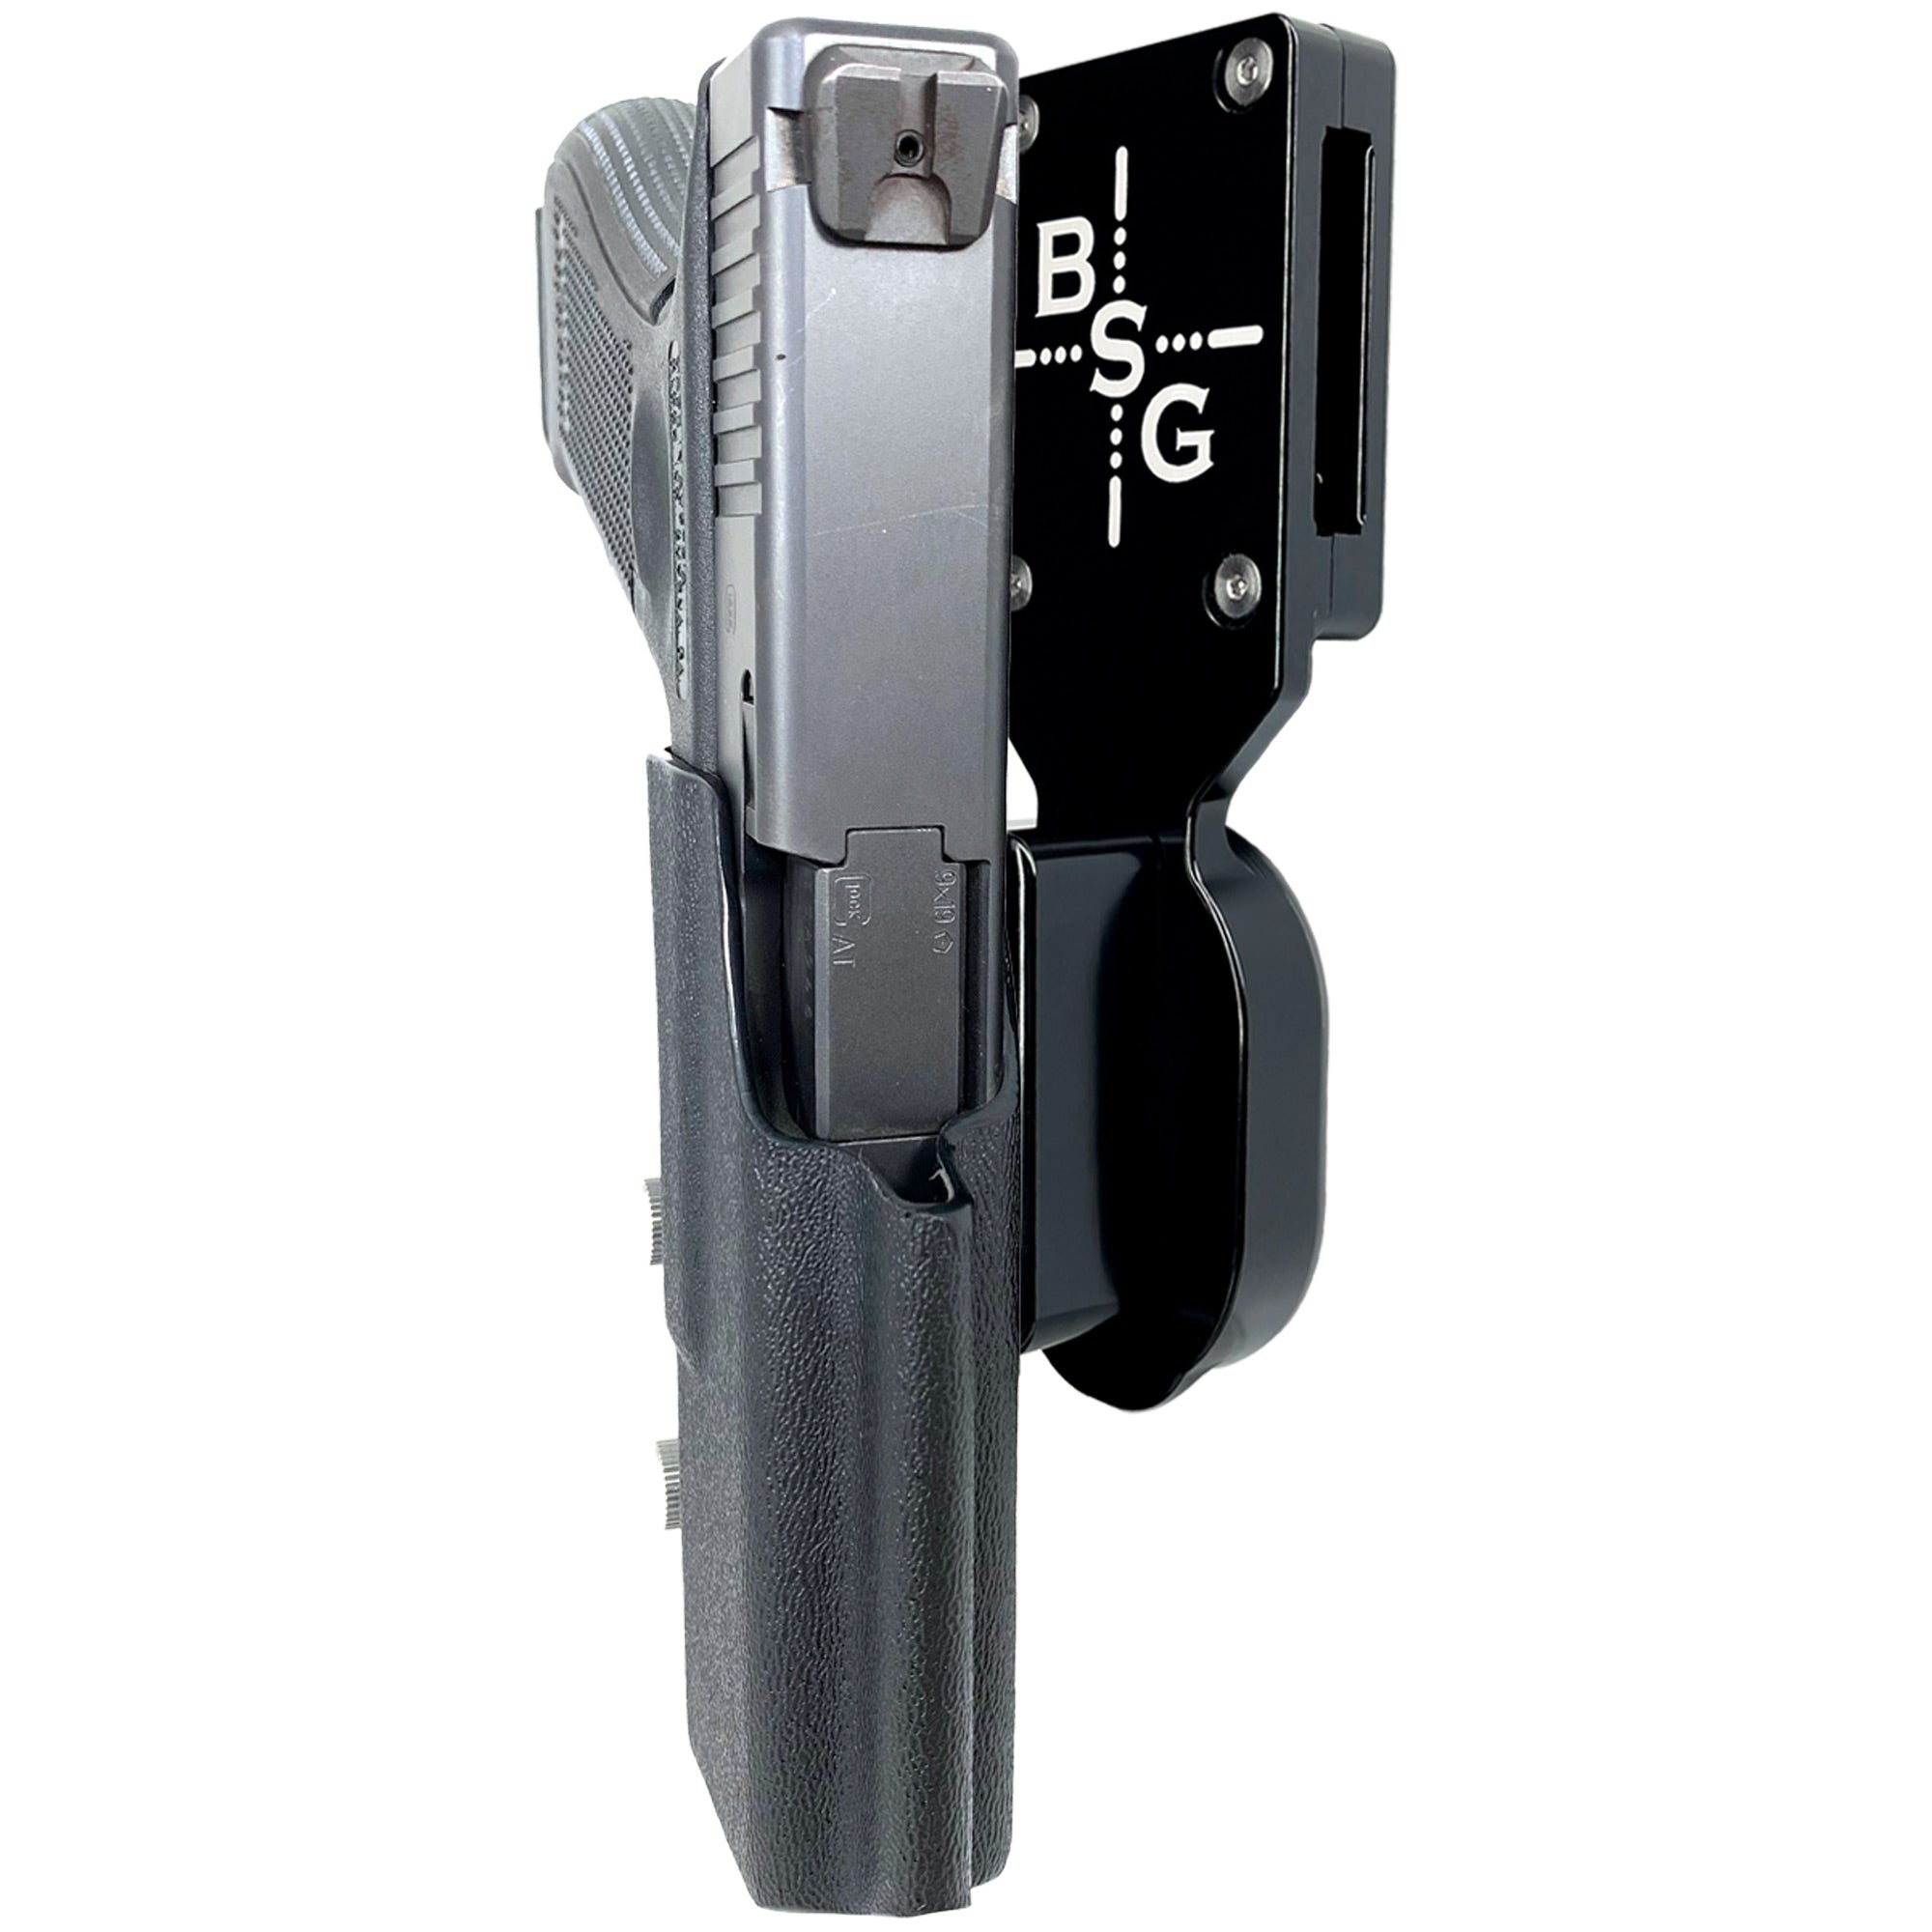 Level 3/III Duty Holster For Glock 17 22 Gen 1/2/3/4 & Glock 17 (G17) Gen  5